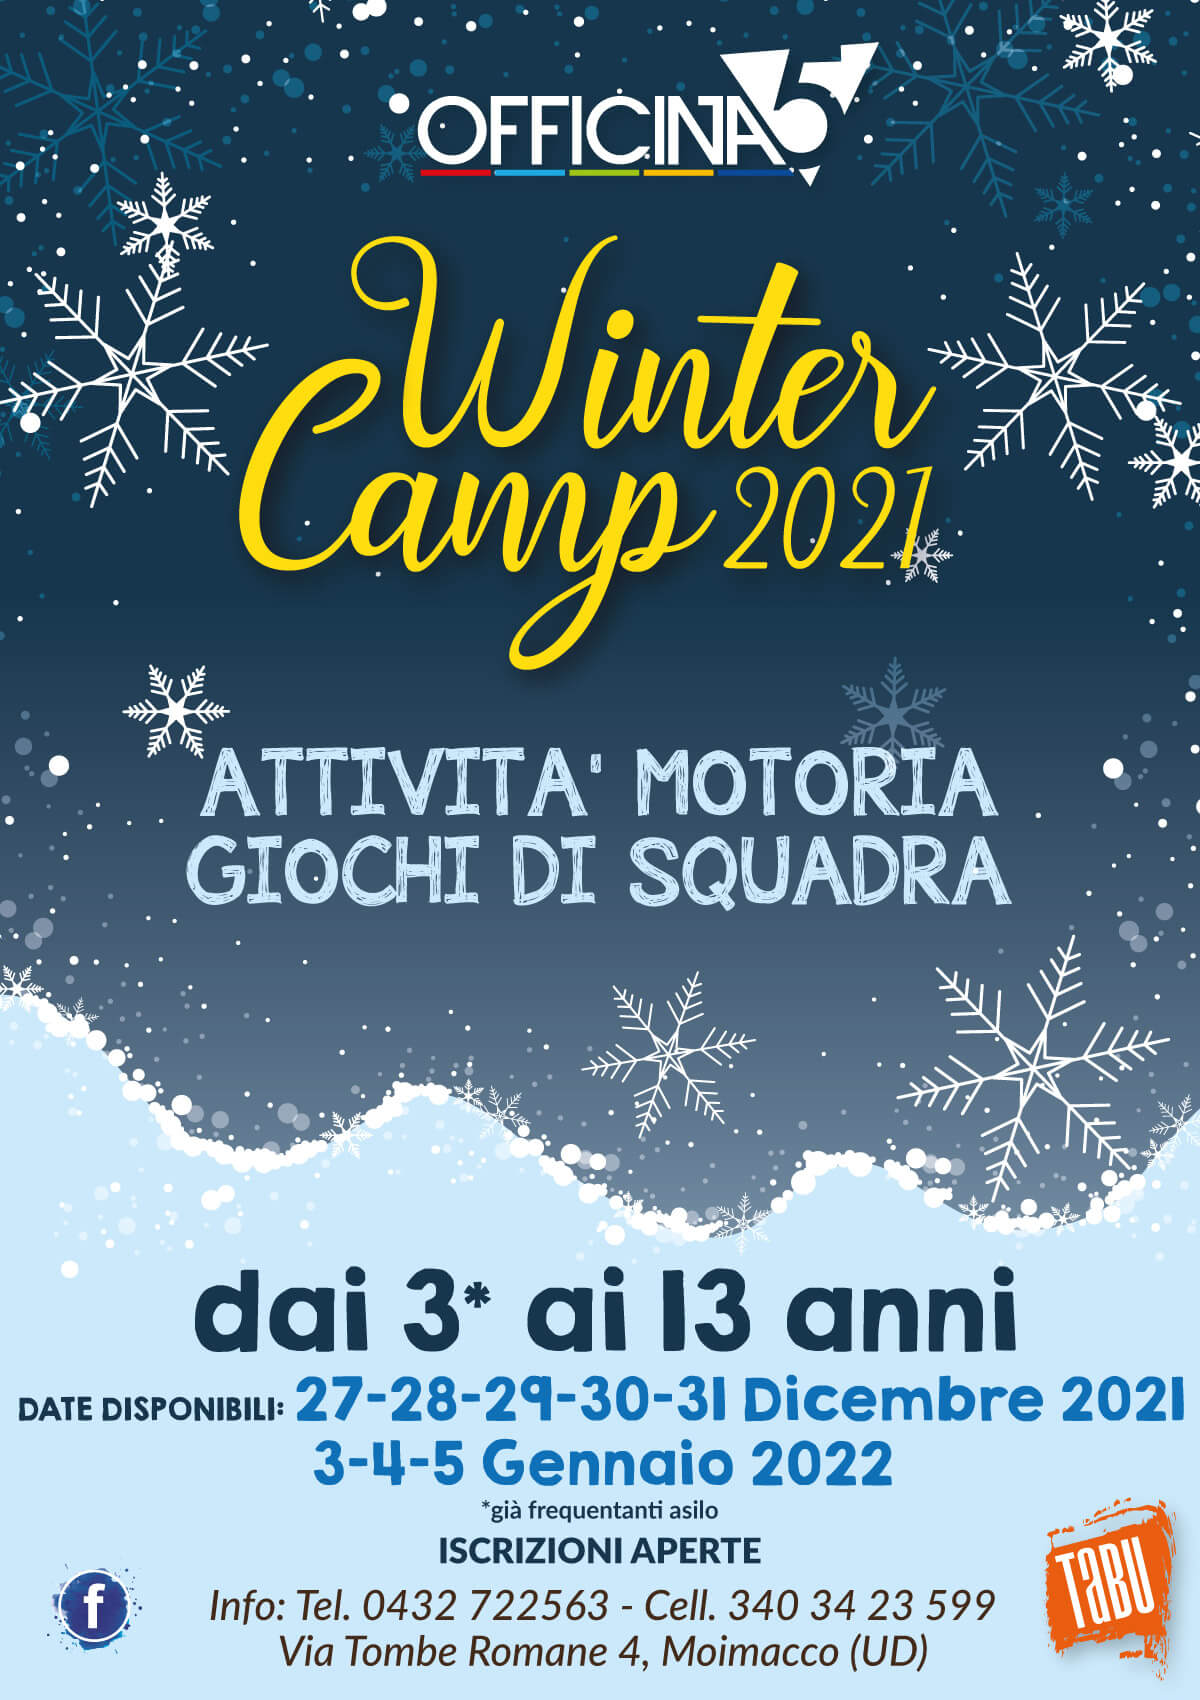 Centro vacanze invernale Winter Camp 2021 a Pradamano, Remanzacco e Cividale